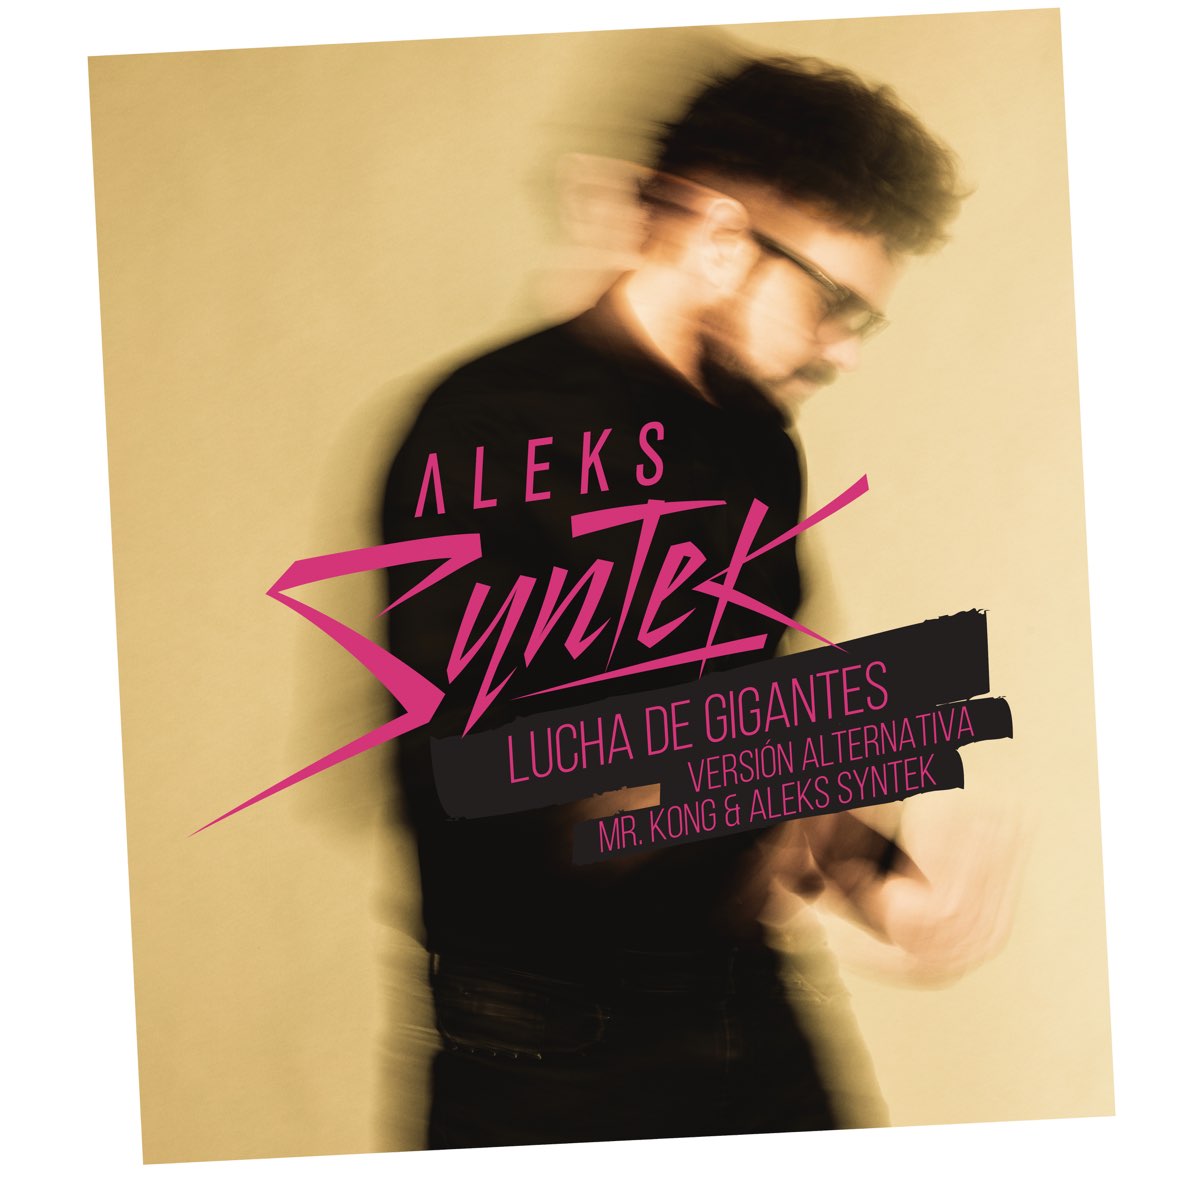 Romántico Desliz - Album by Aleks Syntek - Apple Music